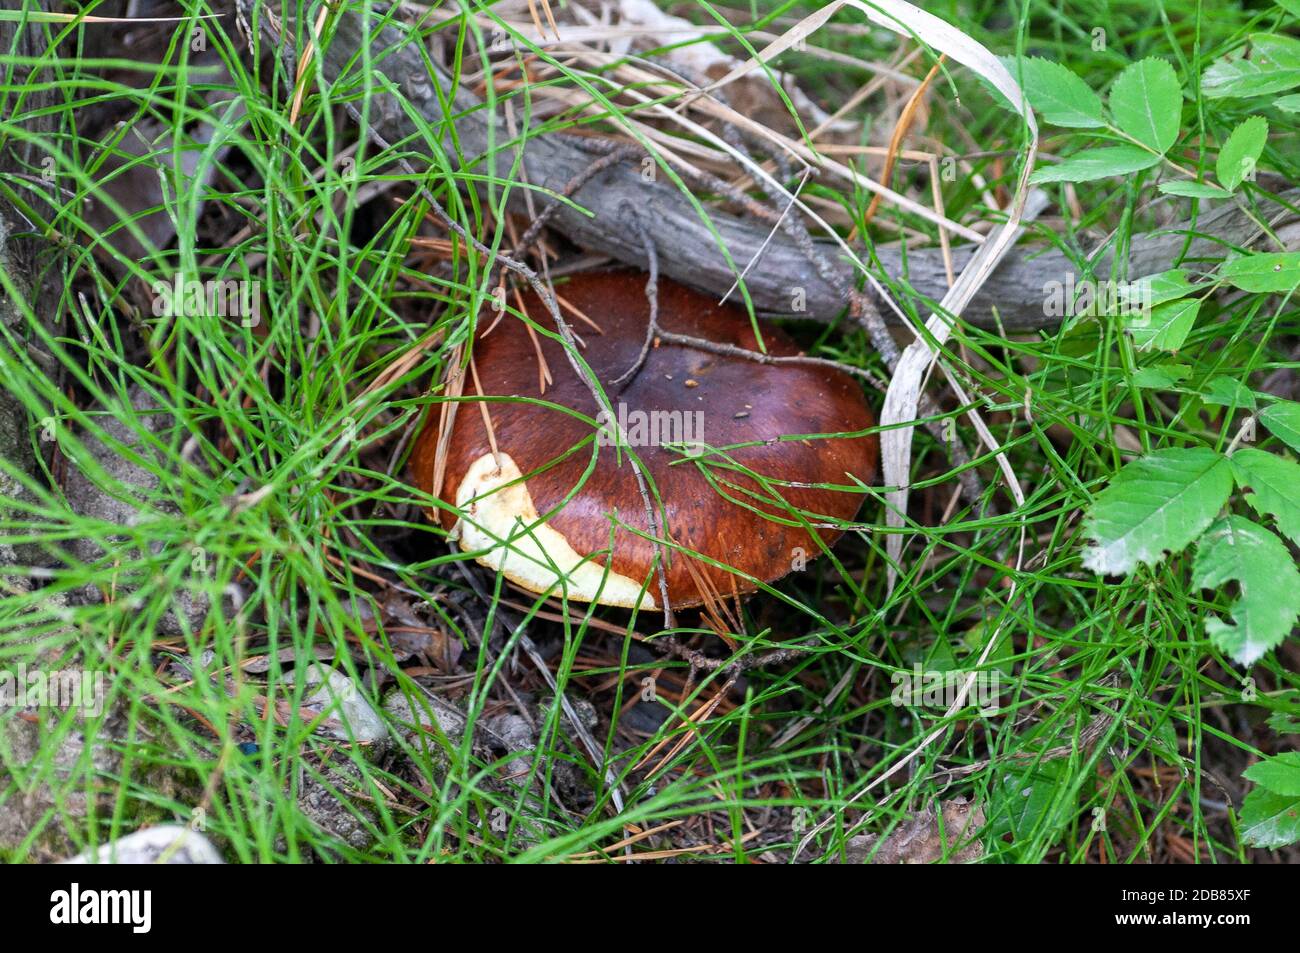 Edible mushroom among the grass Stock Photo